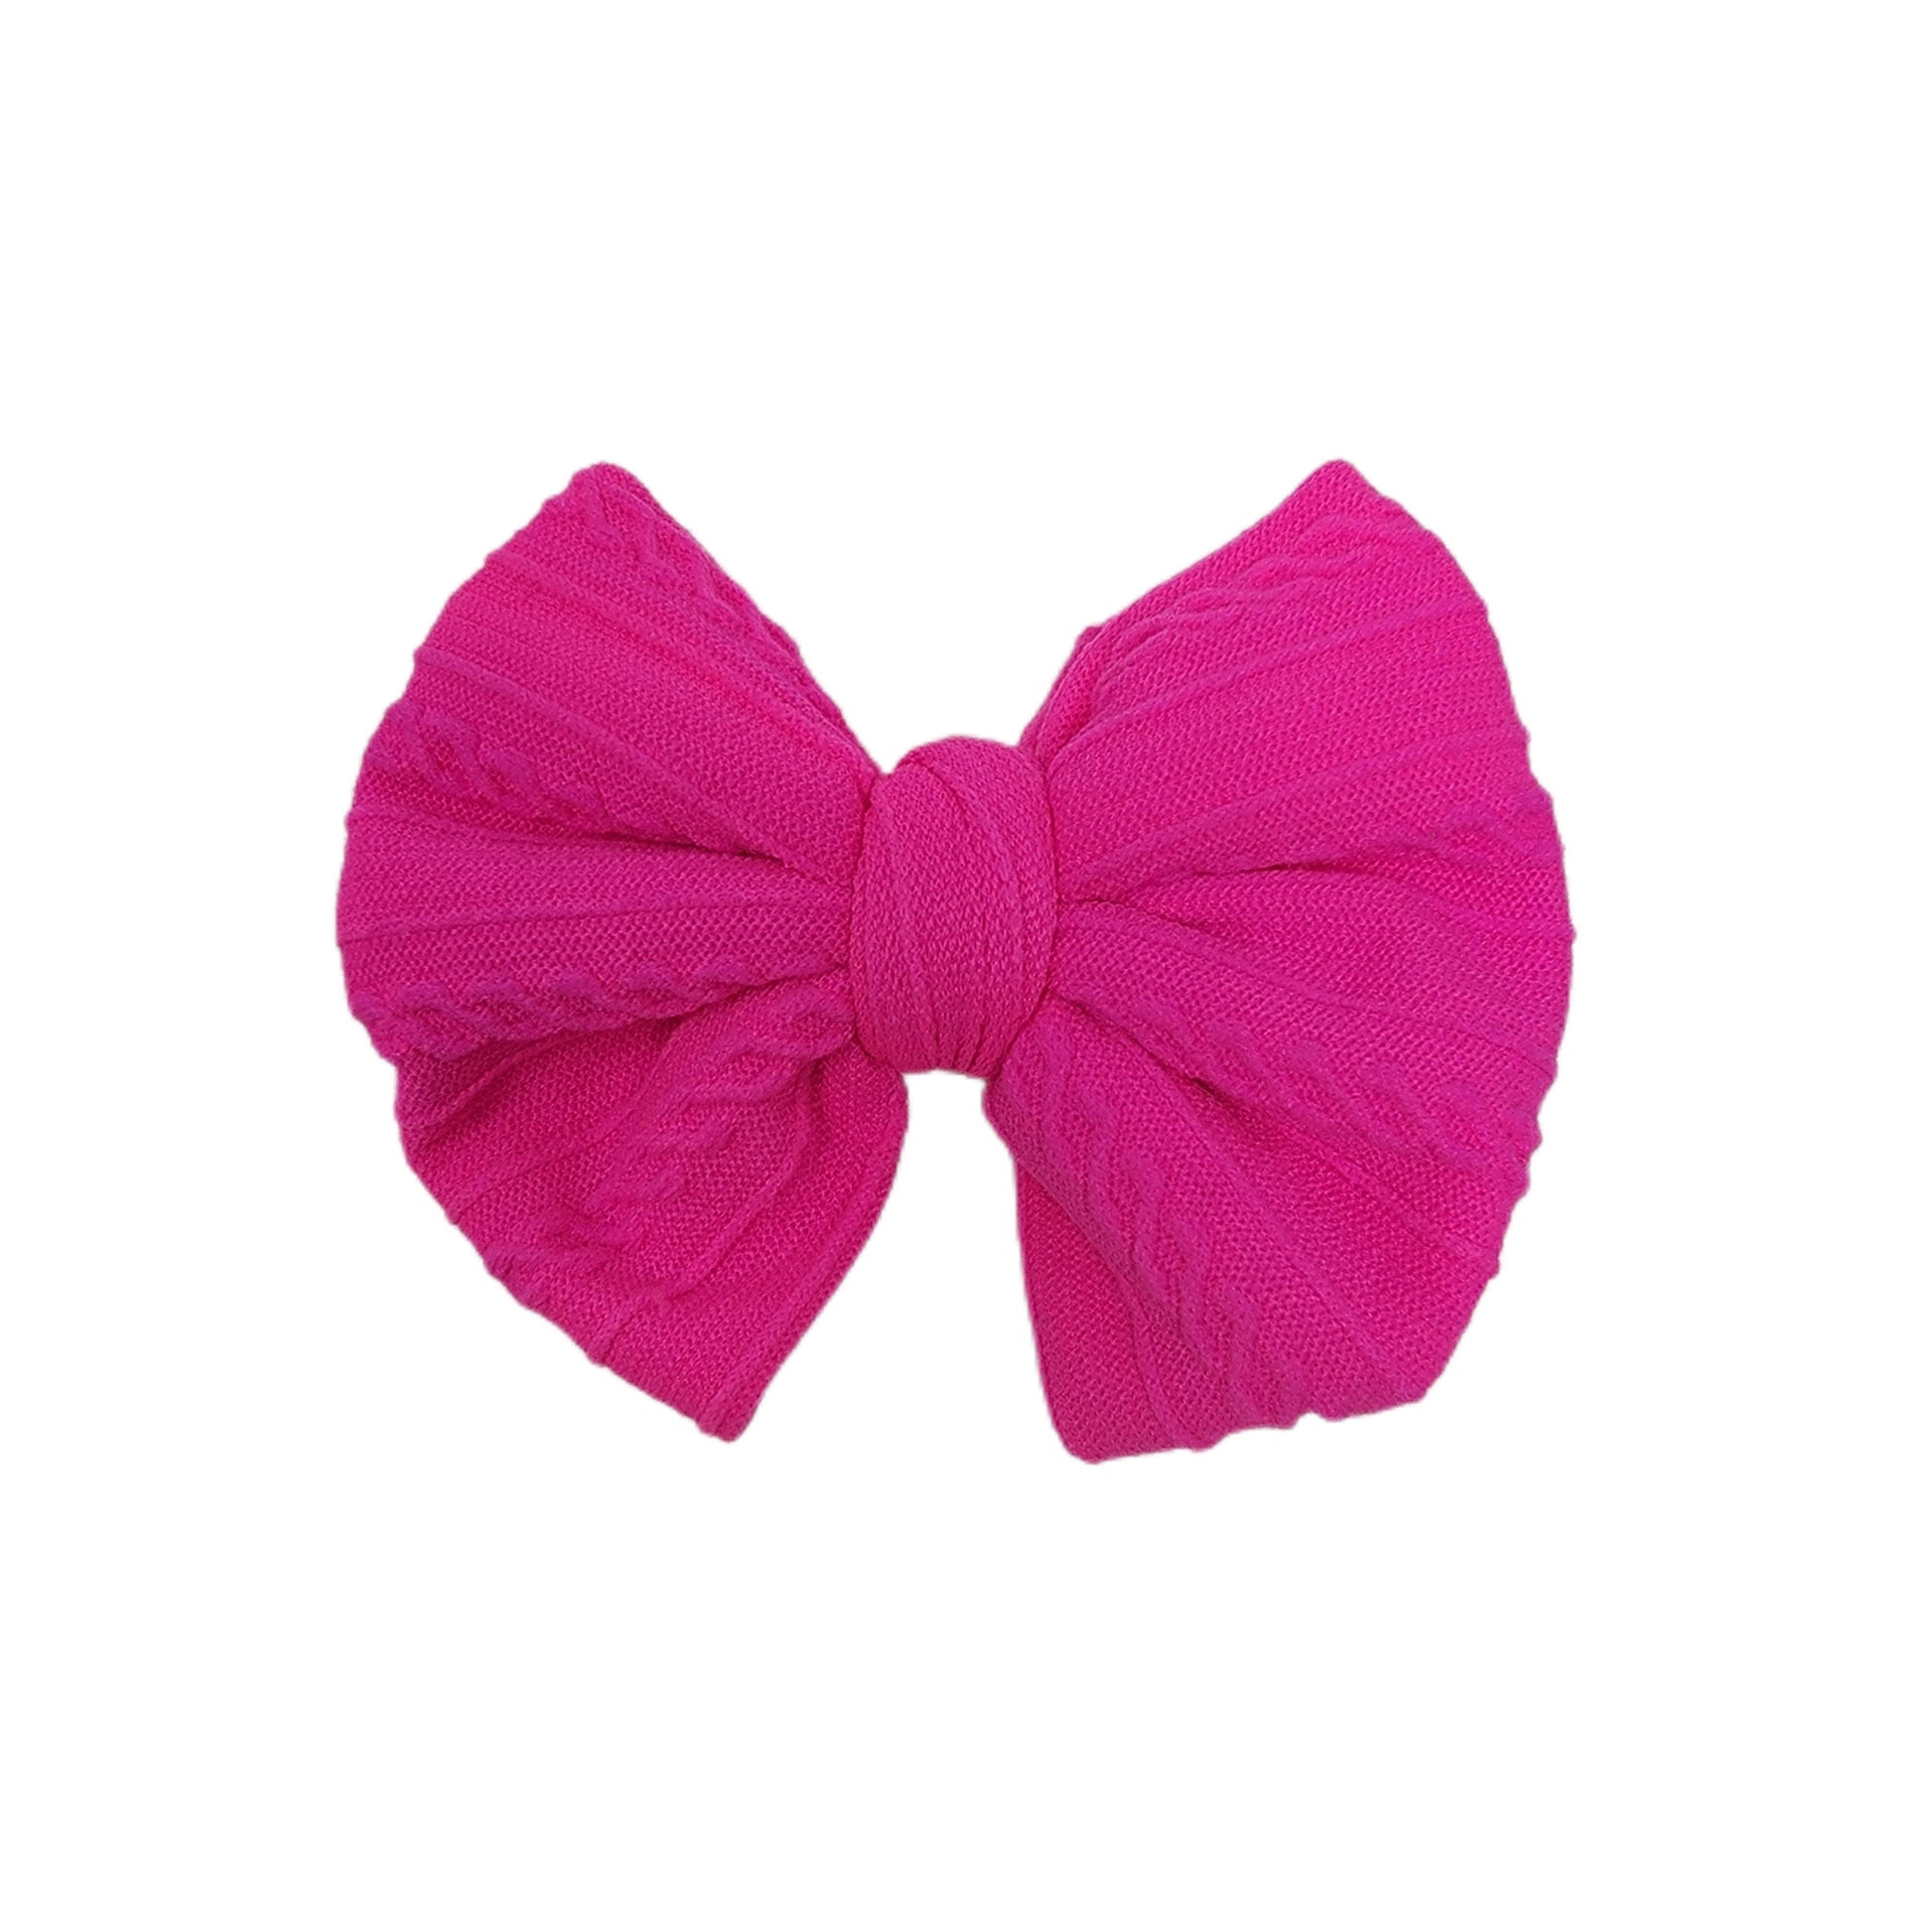 Neon Fuschia Braid Knit Fabric Bow (pair) 3"